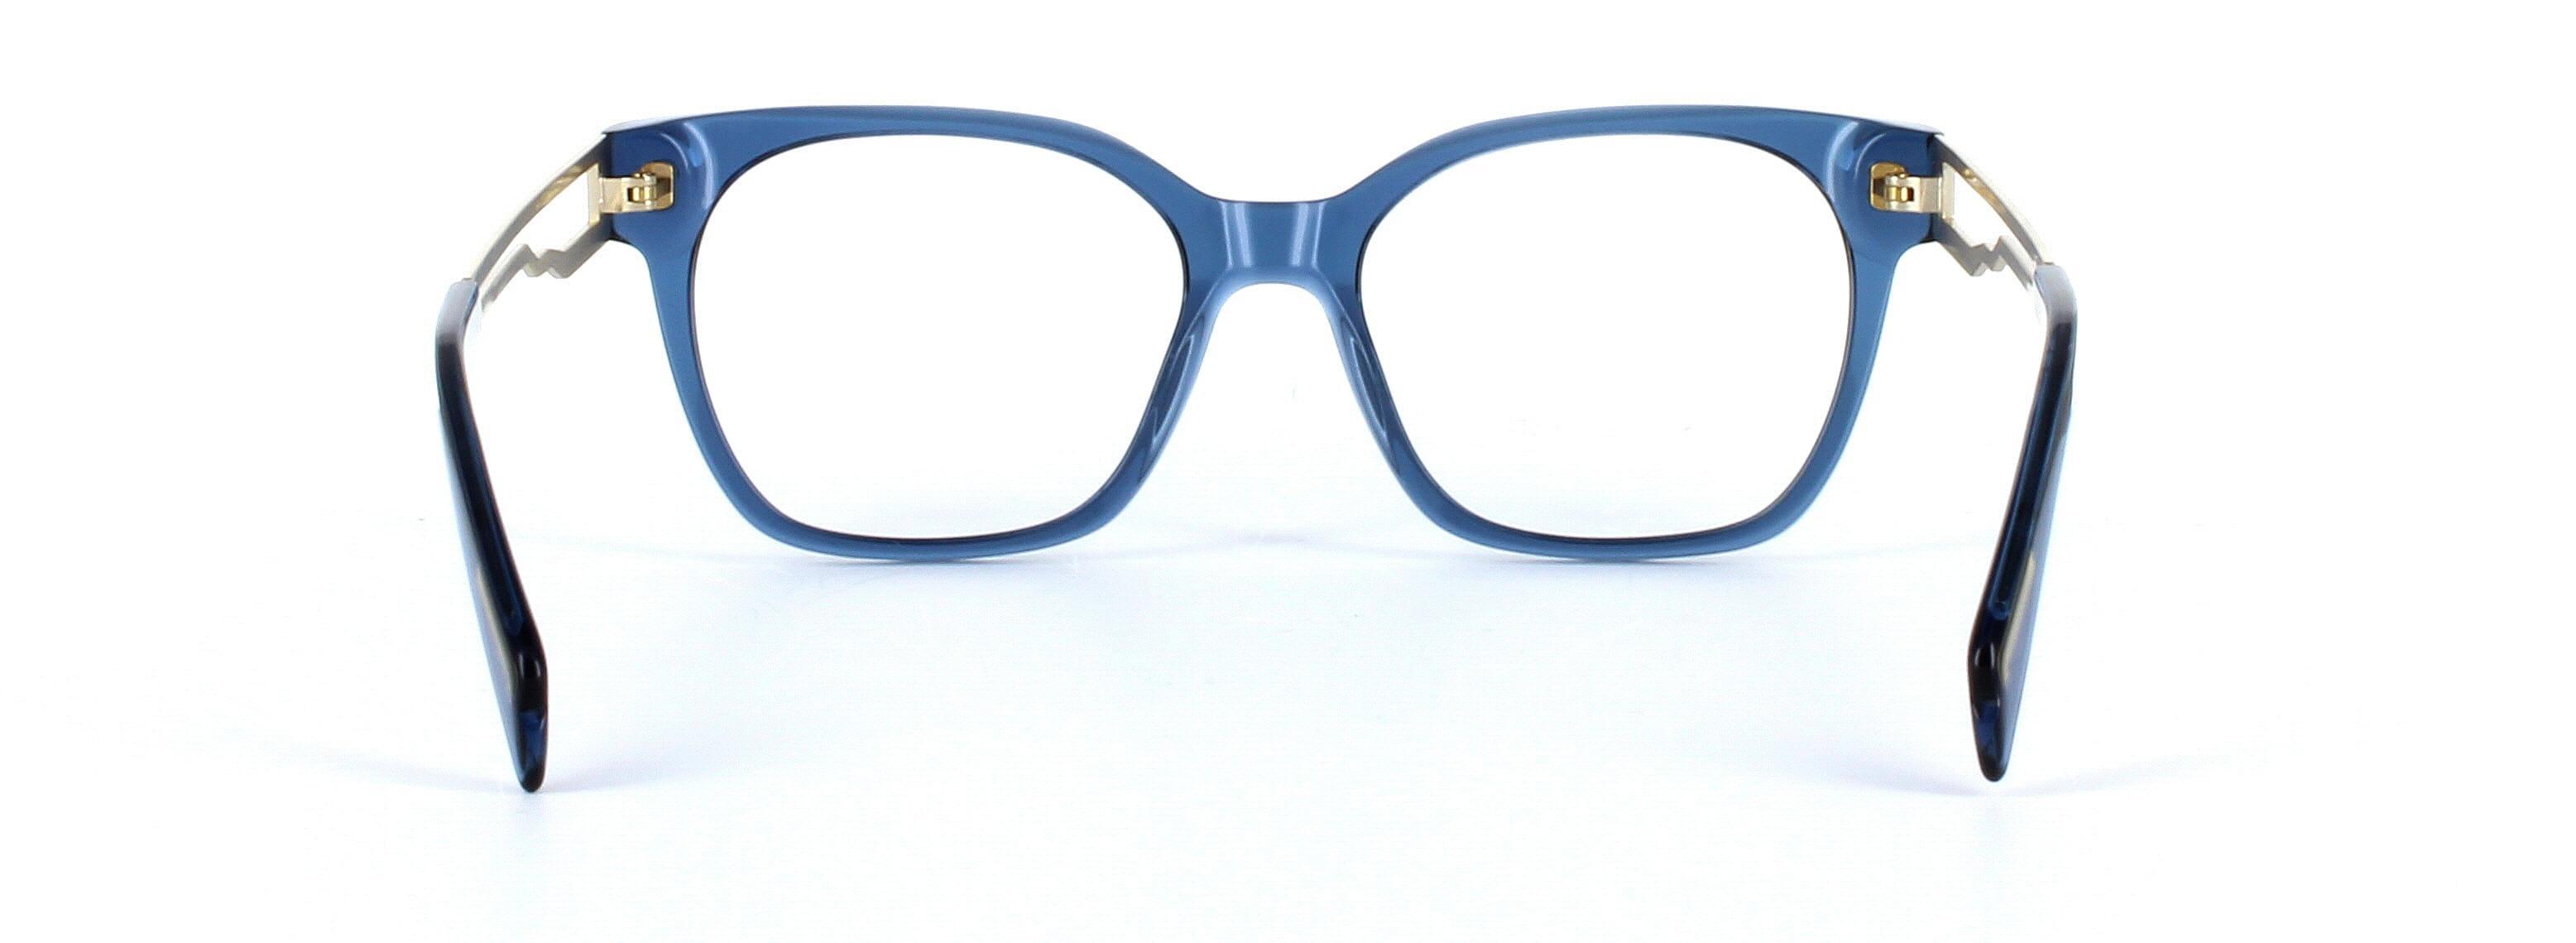 JUST CAVALLI (JC0801) Blue Full Rim Square Acetate Glasses - Image View 3